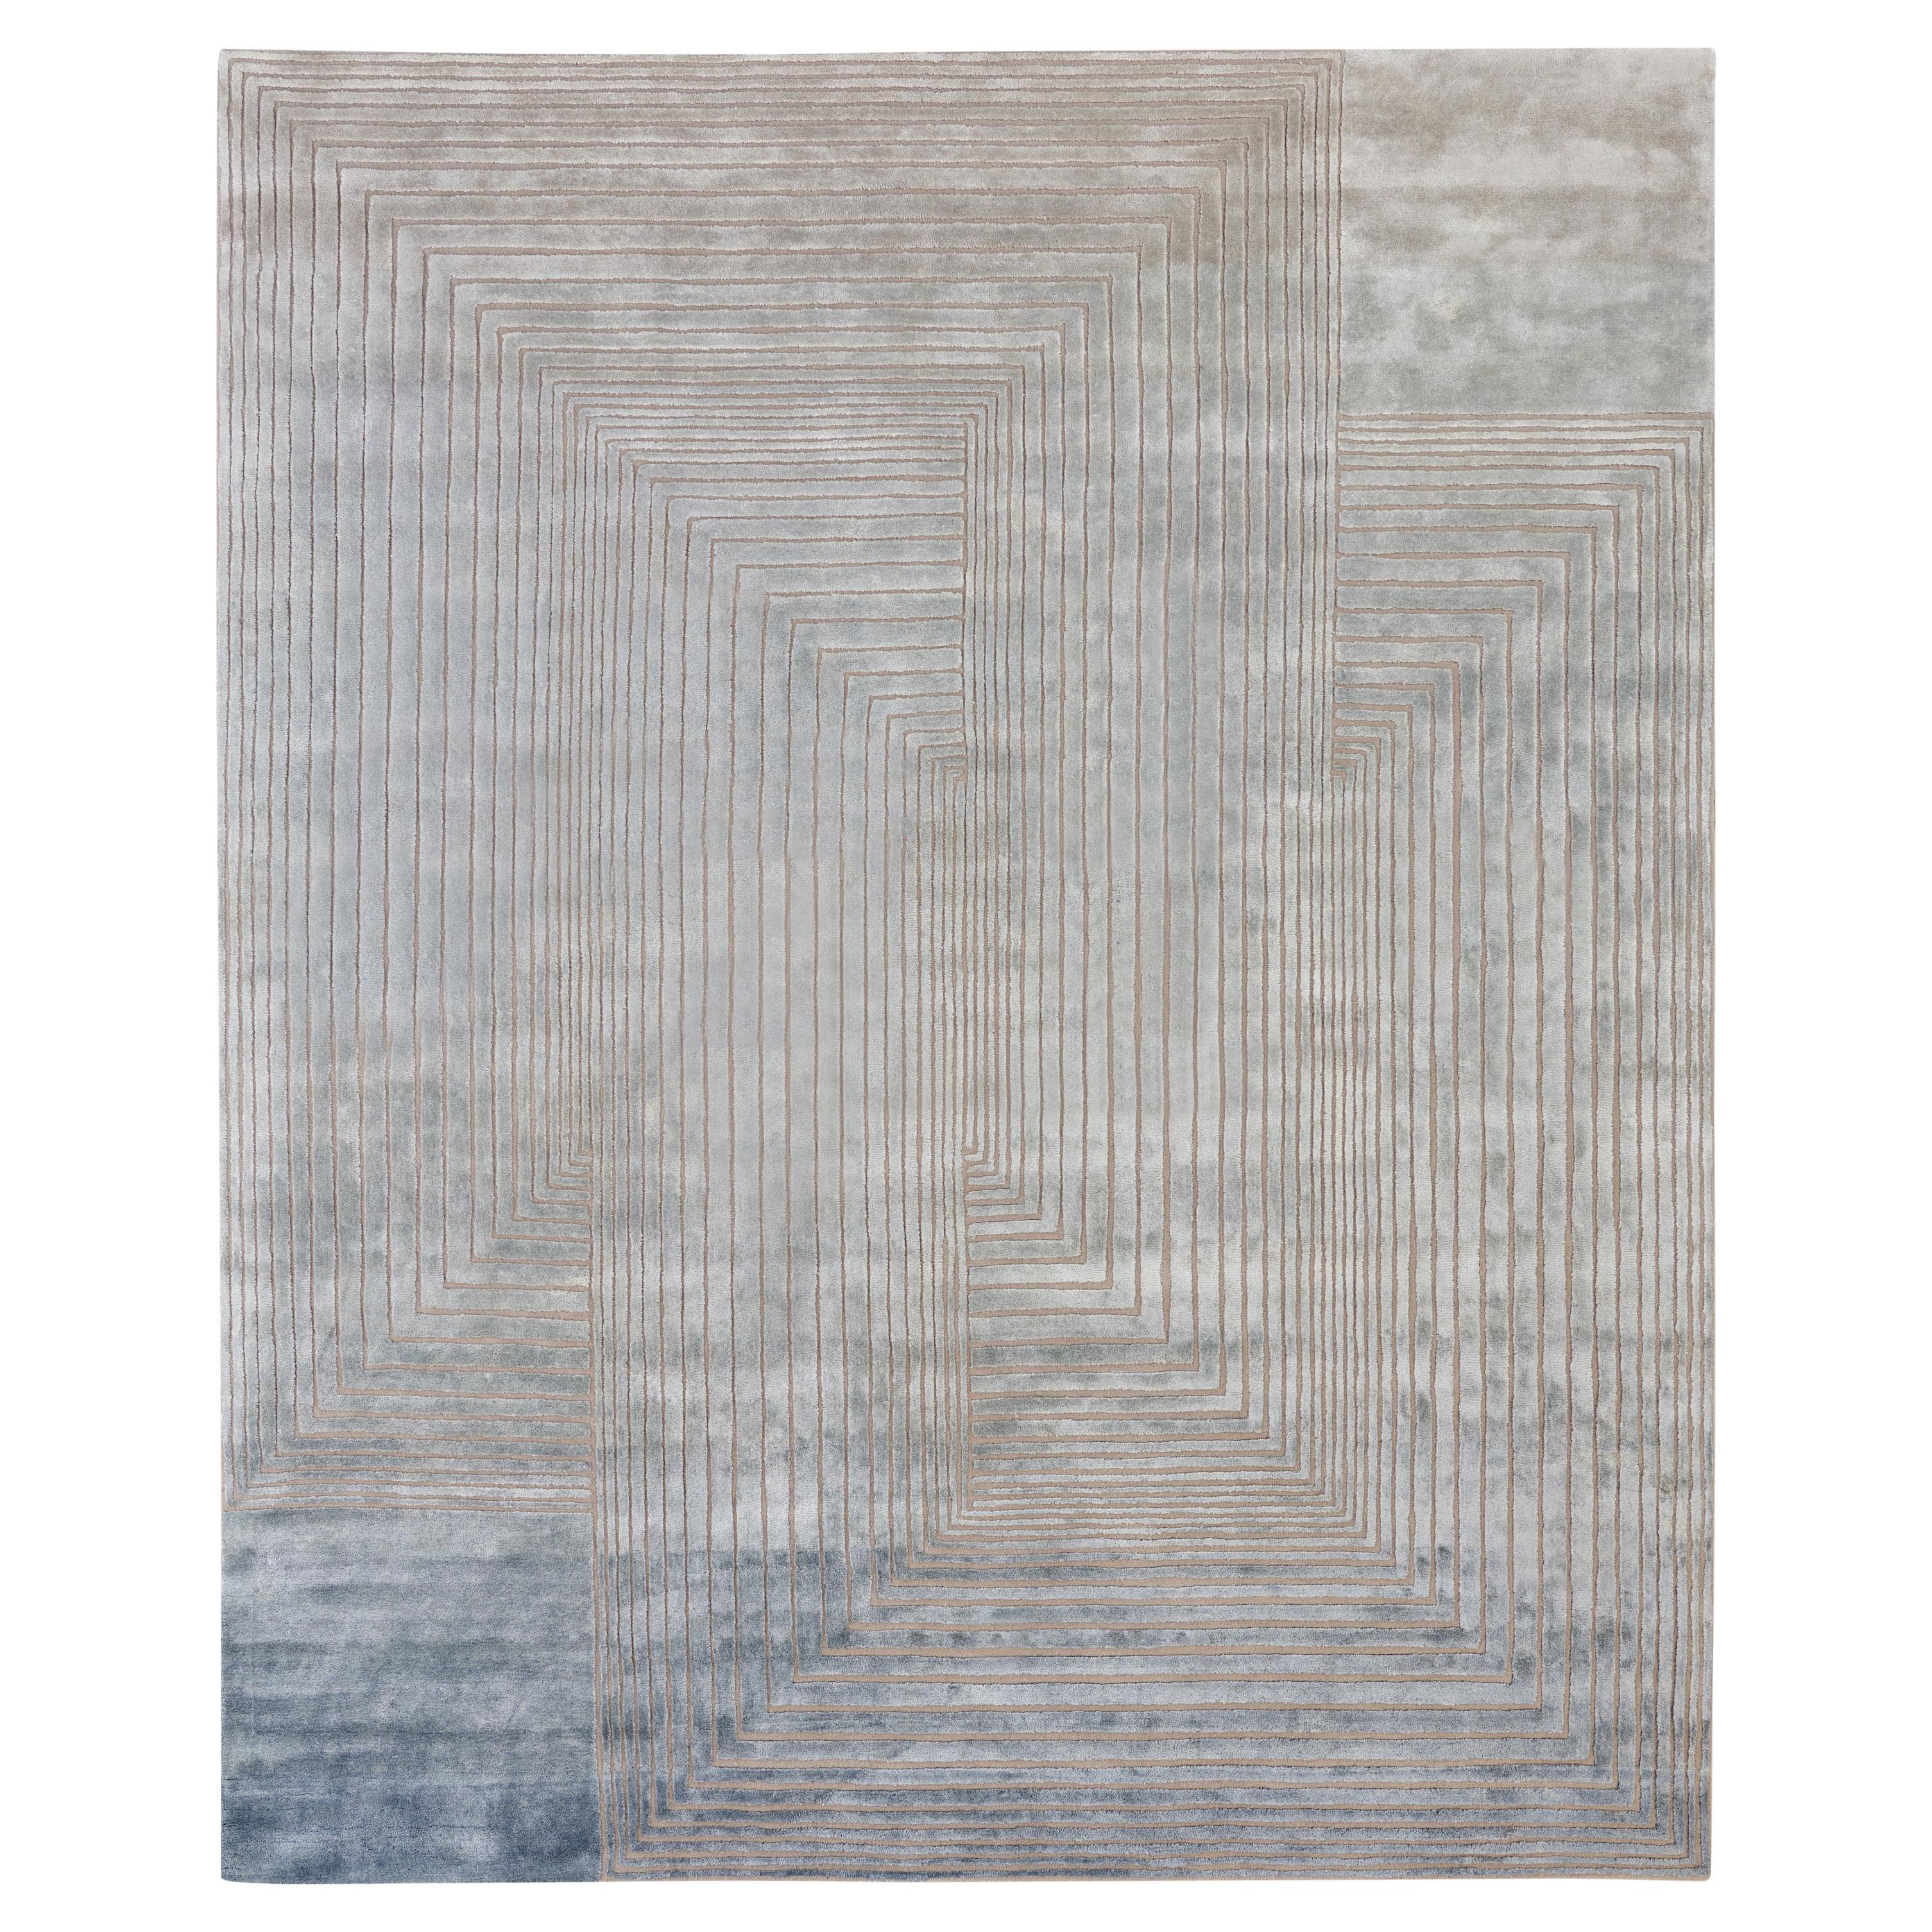 VENEER - Tapis contemporain touffeté à la main en laine et soie, couleurs bleu et rouille par mains